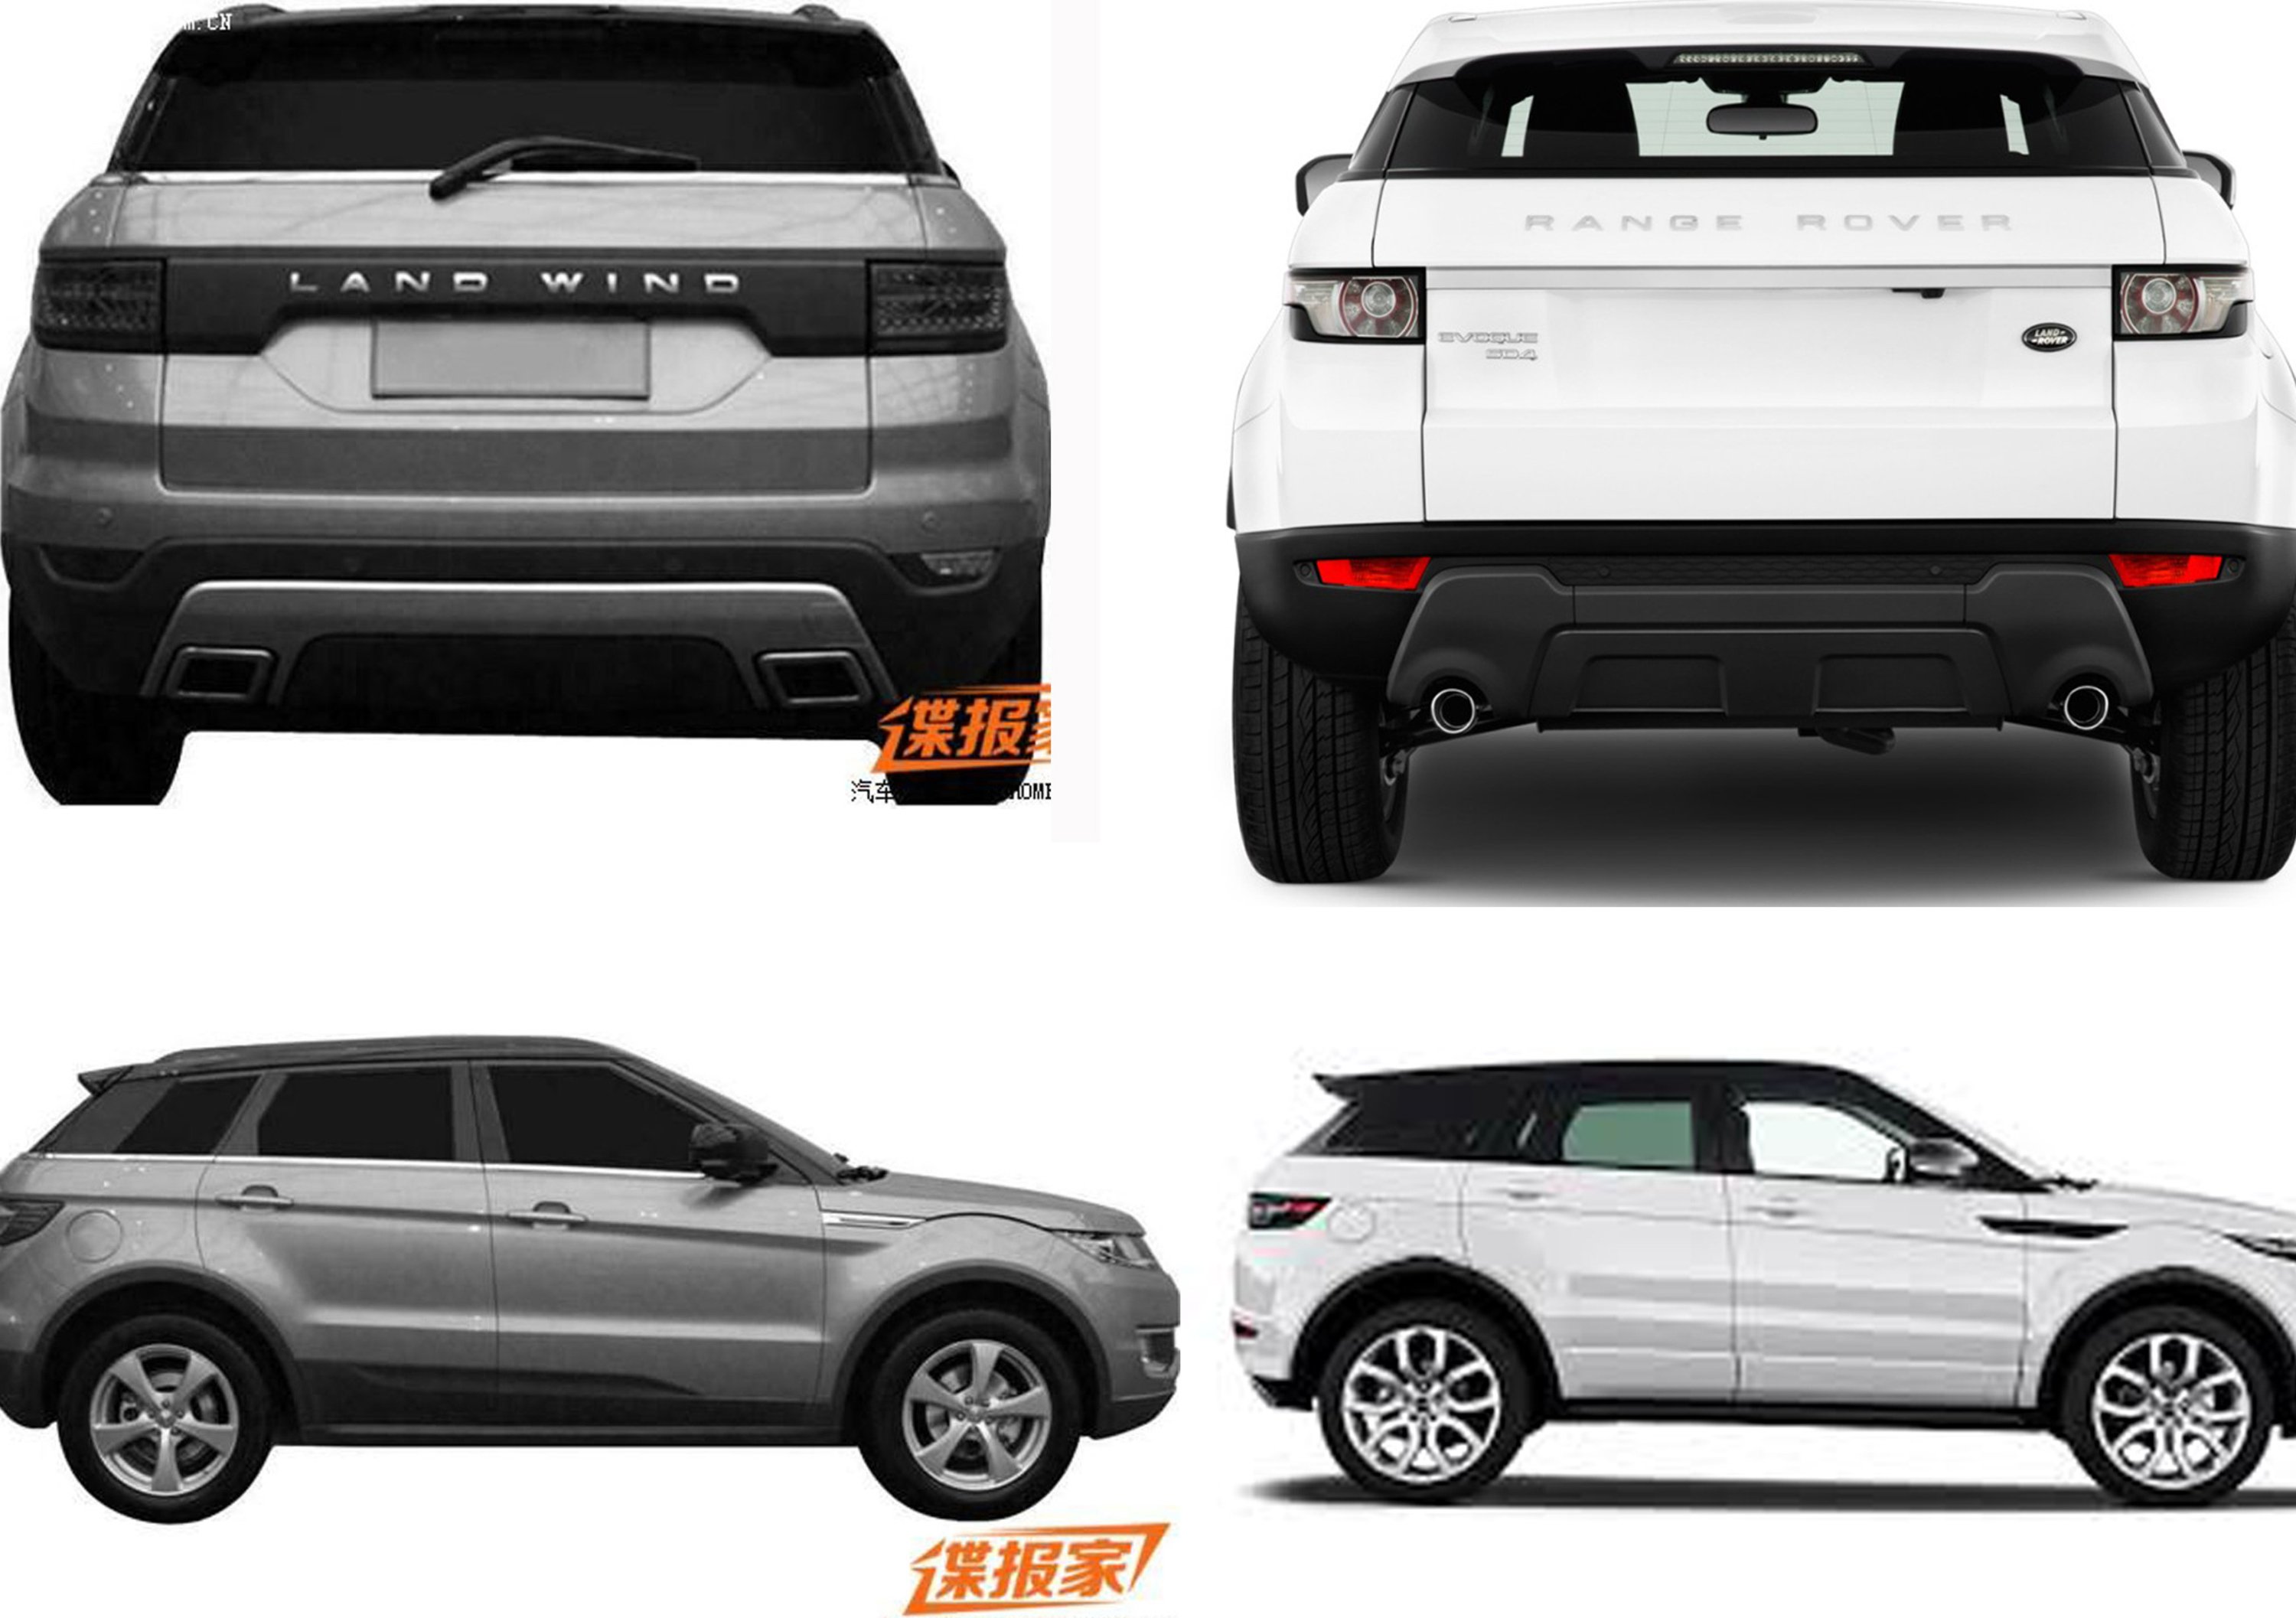 La guerra dei cloni: Landwind E32, la copia cinese della Range Rover Evoque